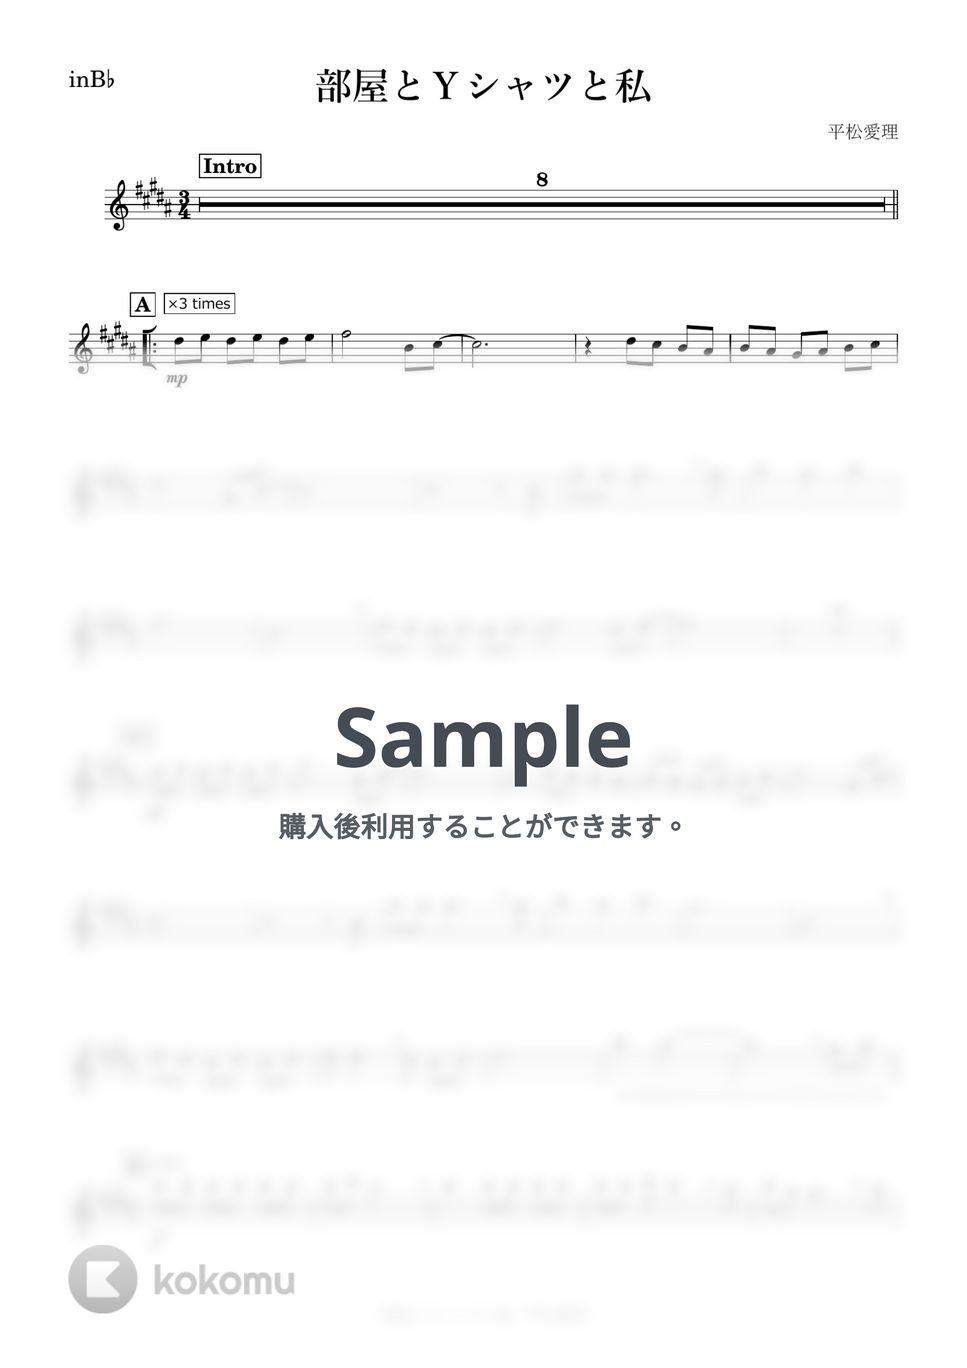 平松愛理 - 部屋とYシャツと私 (B♭) by kanamusic